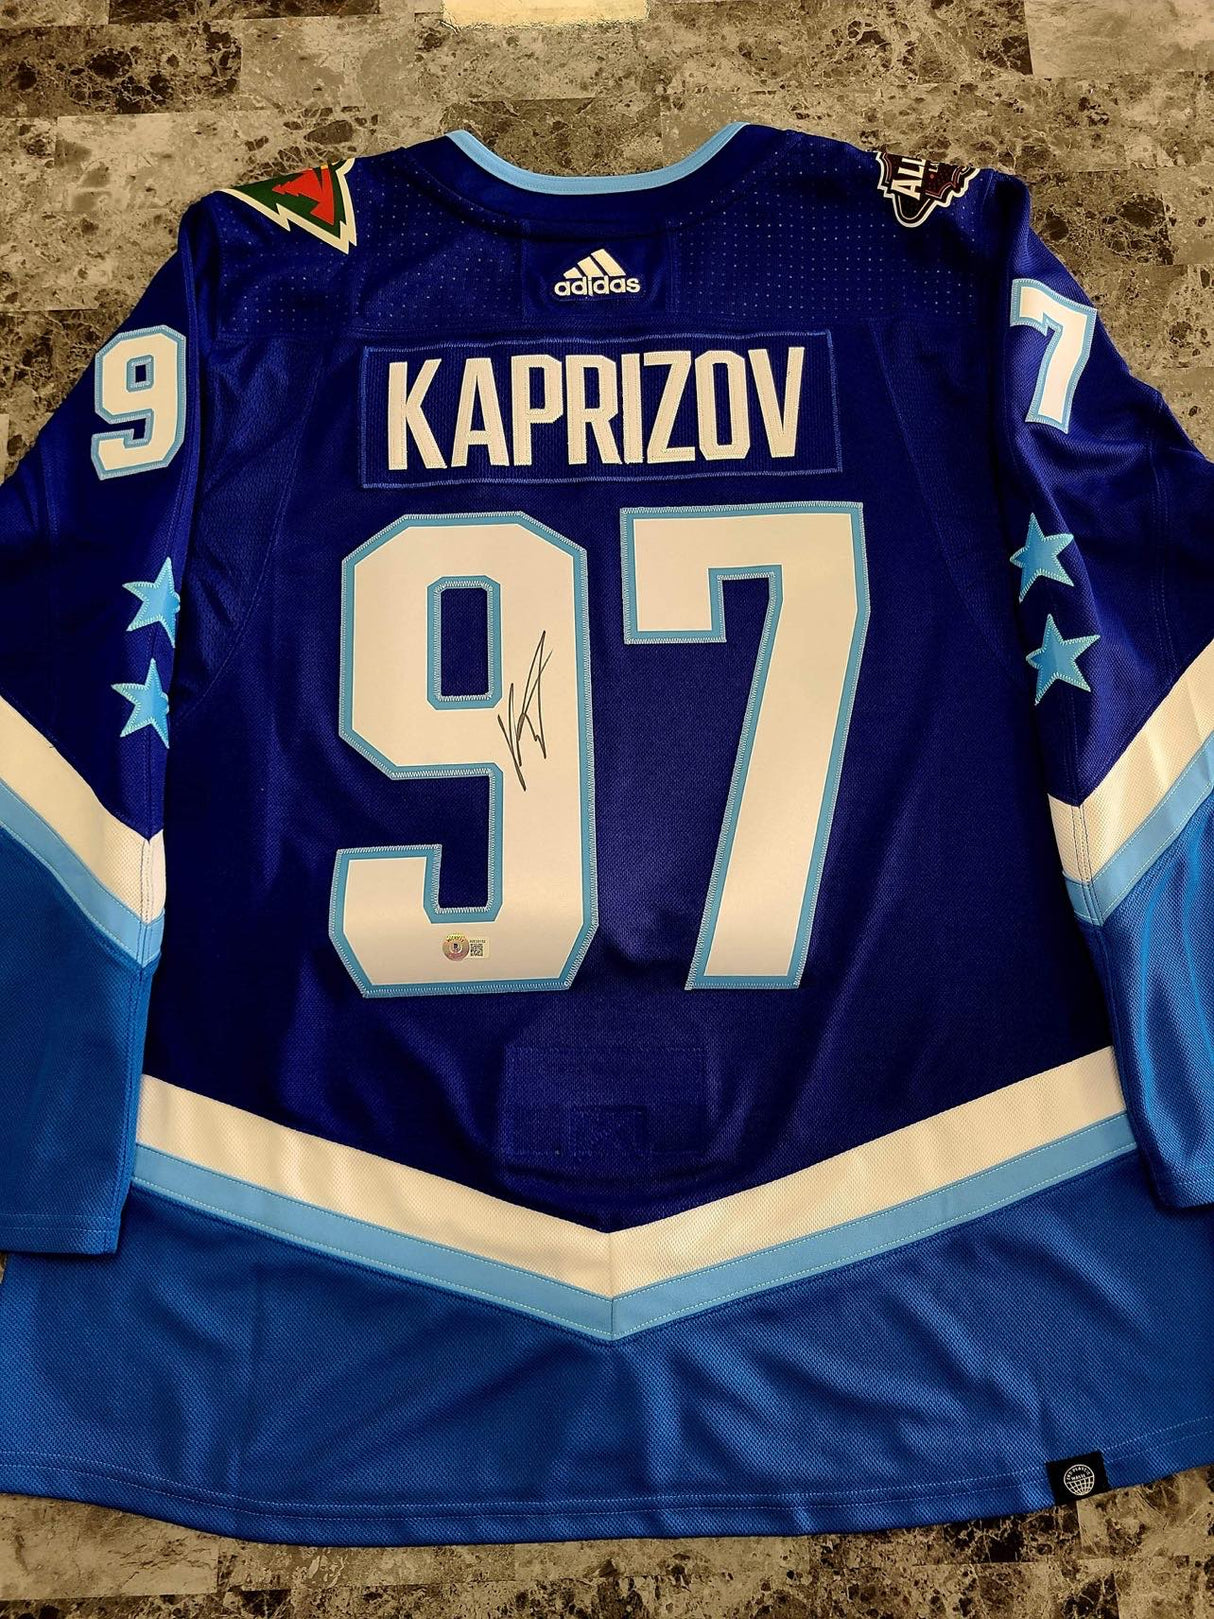 Kirill Kaprizov Signed All Star Jersey w/ COA